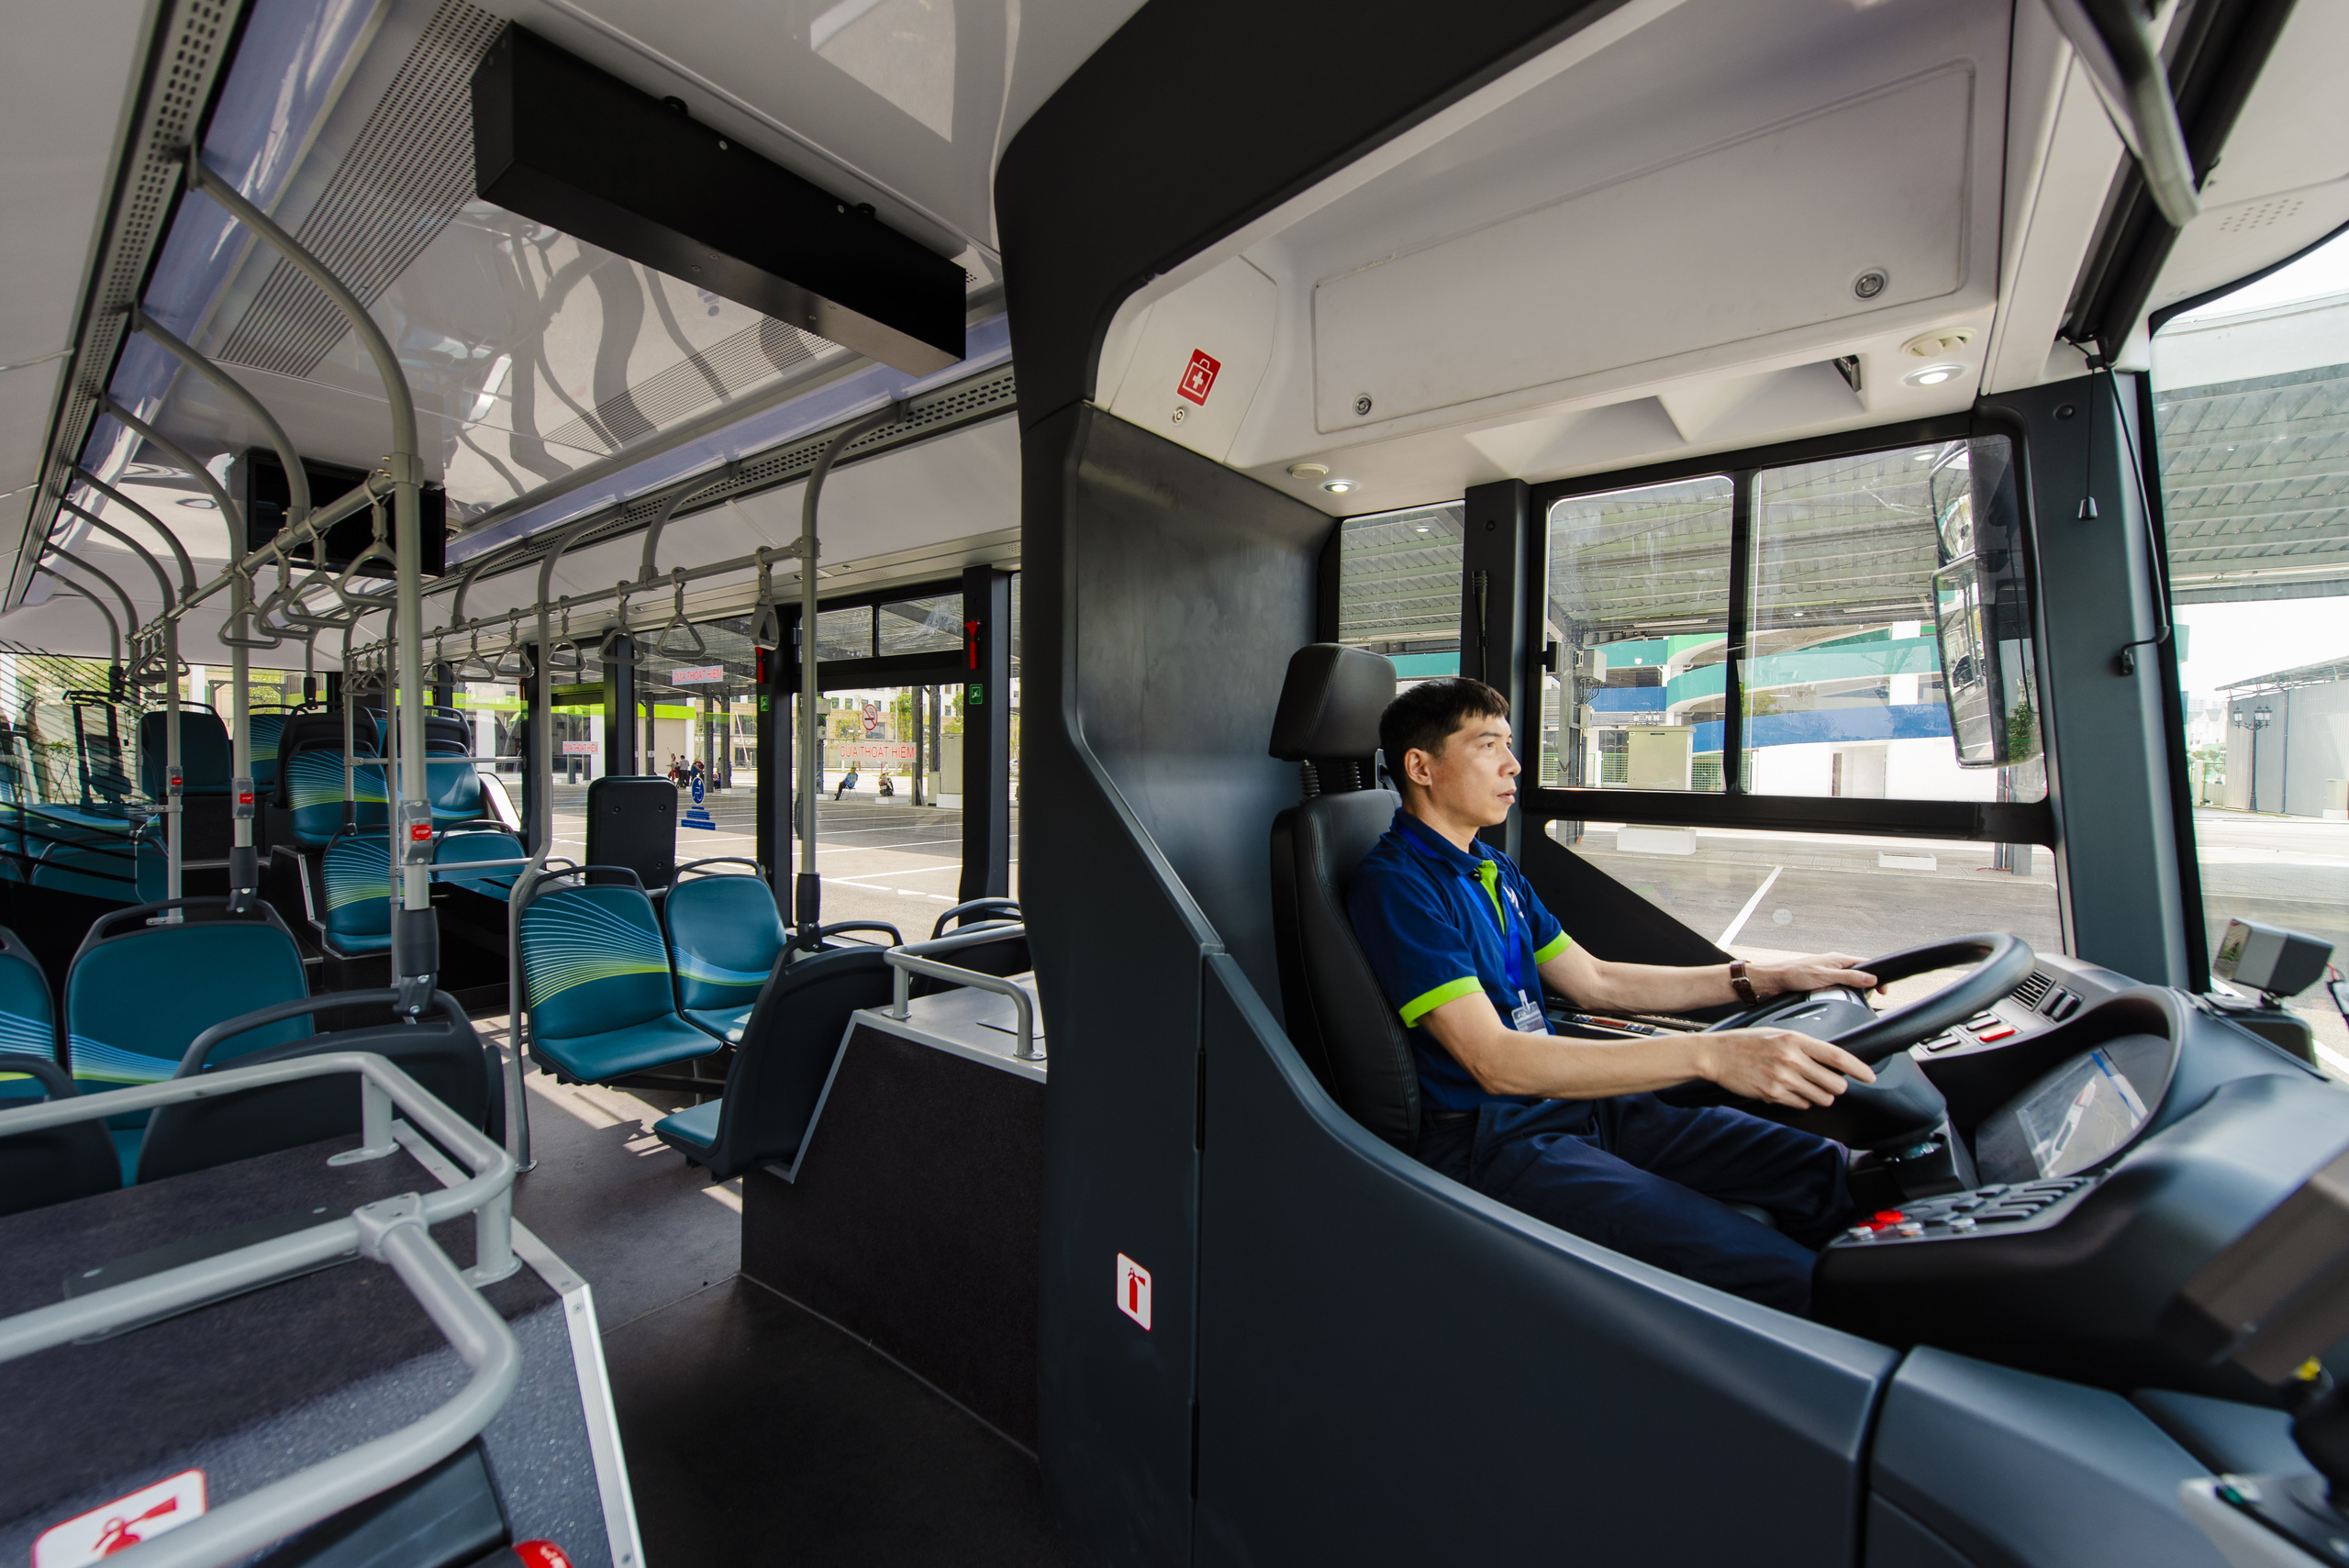 Xe buýt điện thông minh là sự kết hợp hợp lý giữa công nghệ và bảo vệ môi trường. Bạn có muốn tìm hiểu thêm về xe buýt này và những tiện ích mà nó mang lại không? Nhấp vào hình ảnh để khám phá ngay.